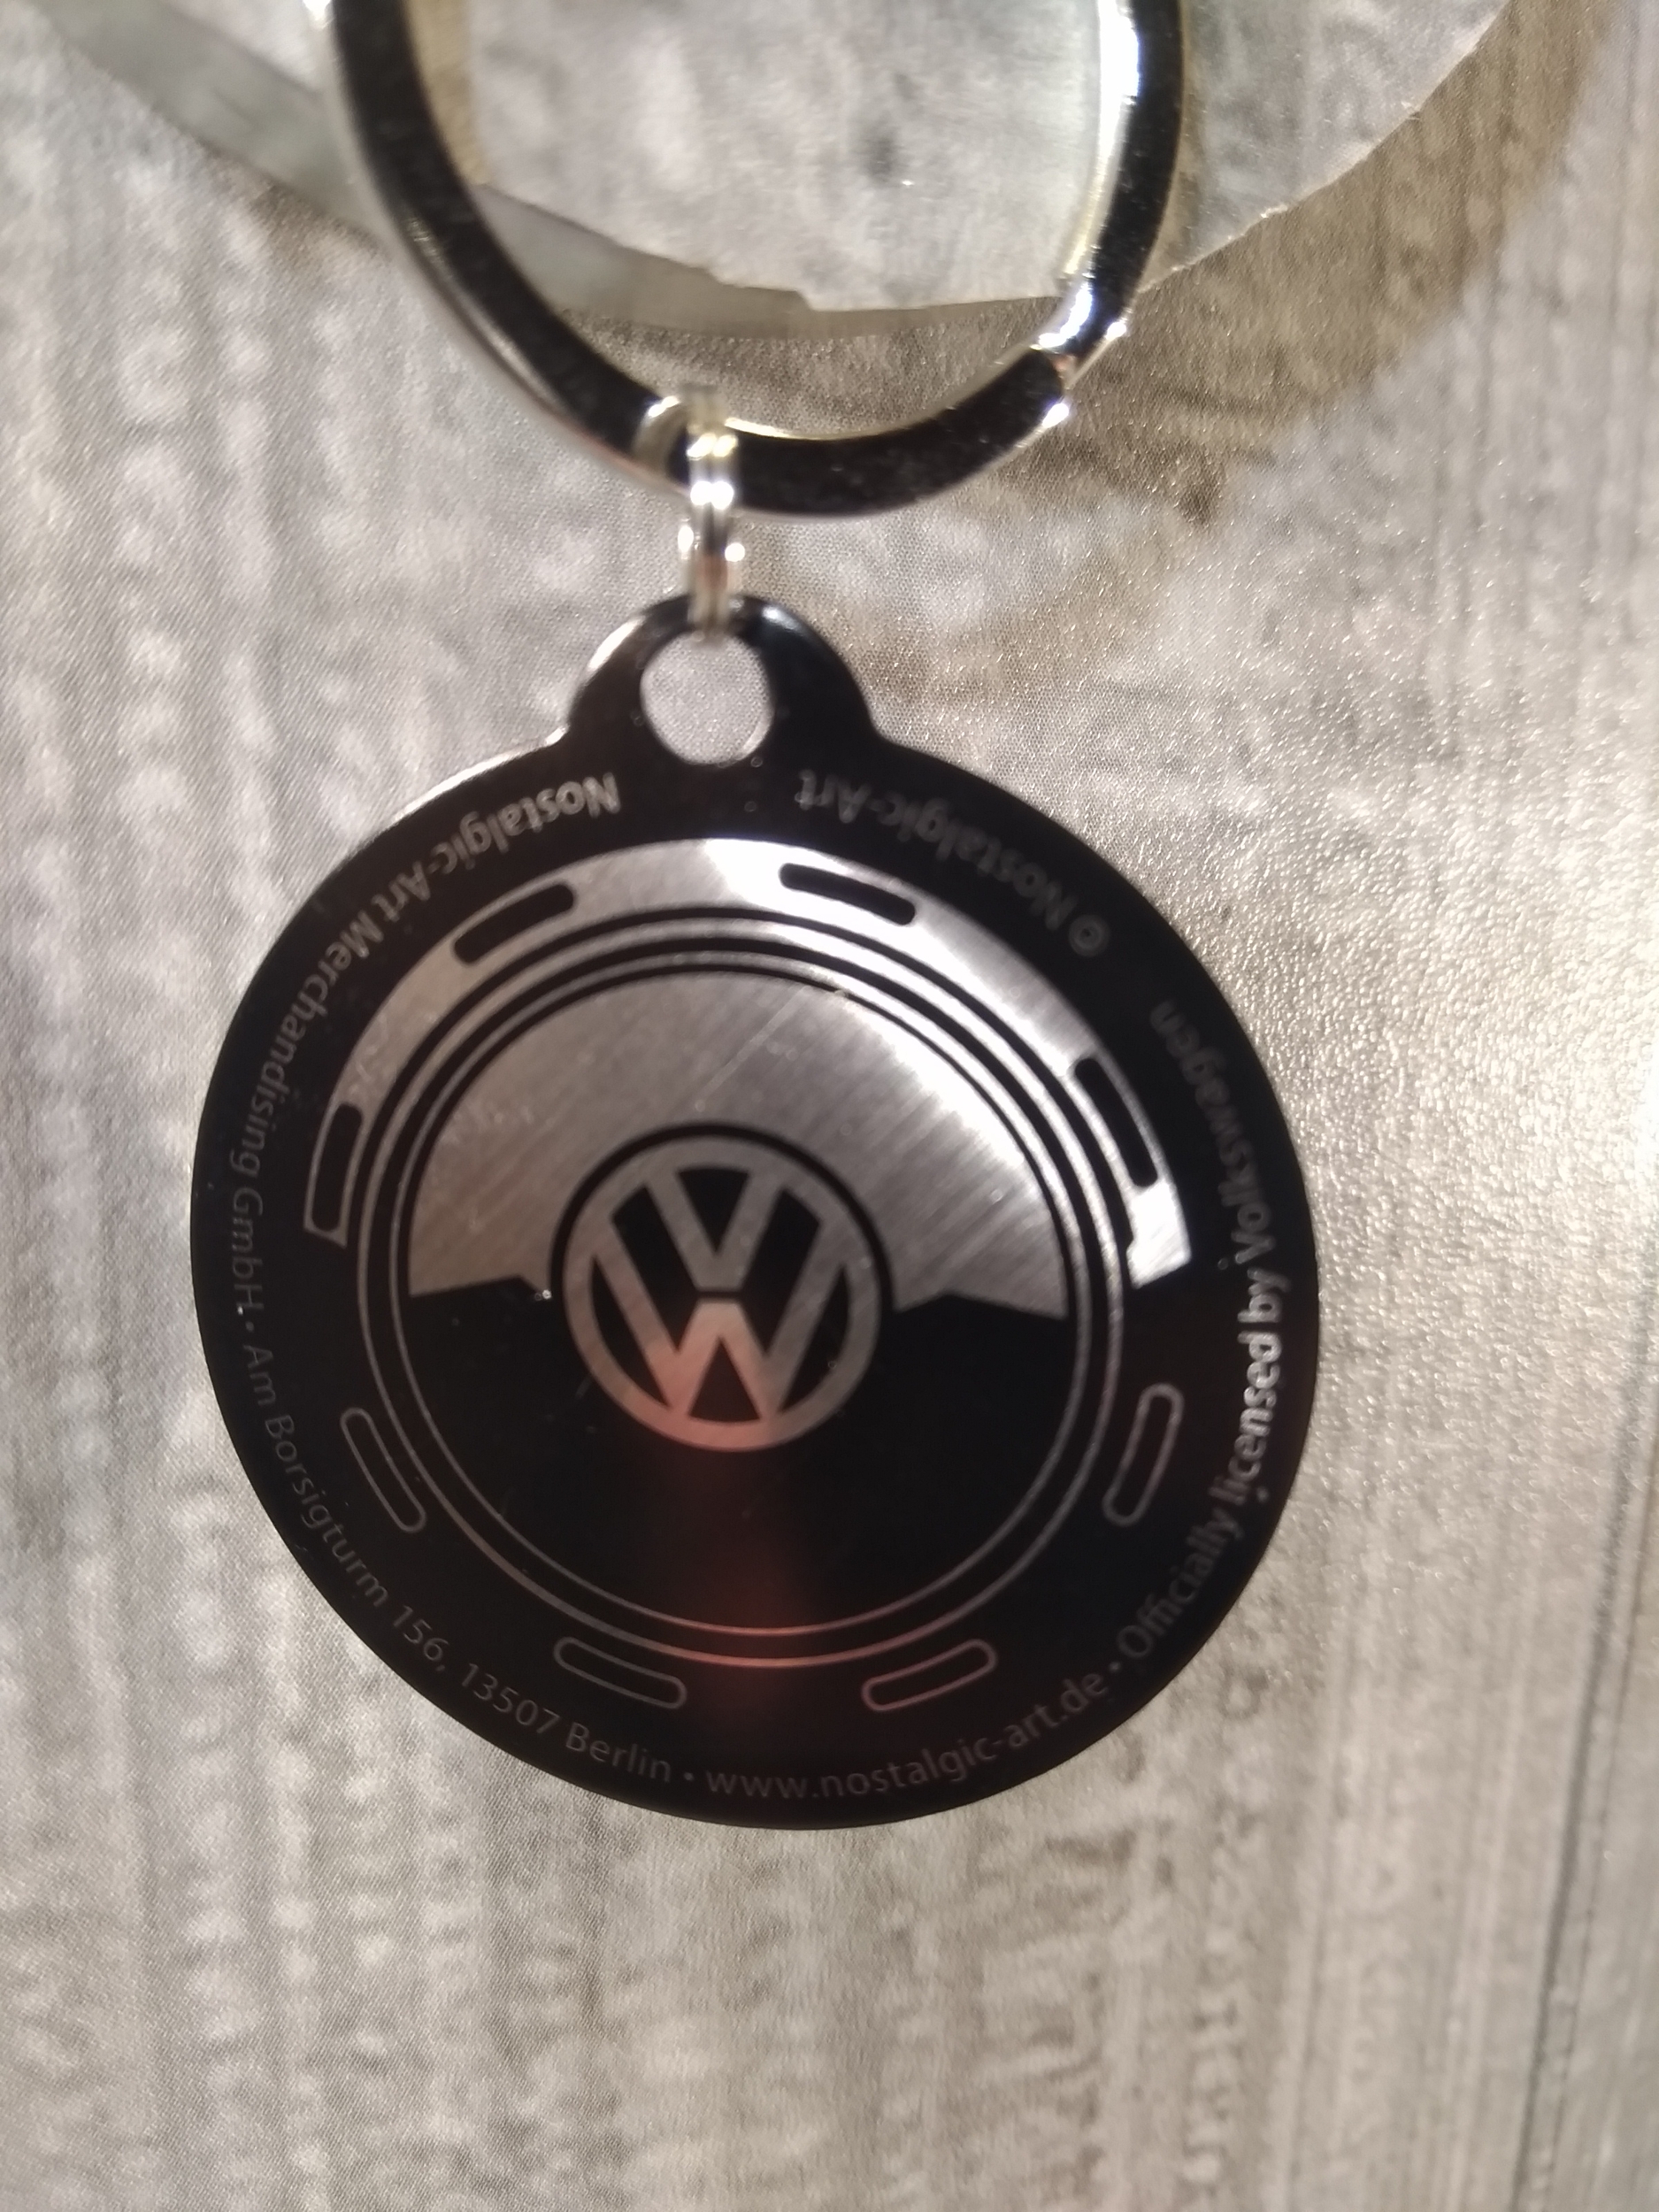 Porte clef volkswagen VW metal avec porte jeton - Équipement auto